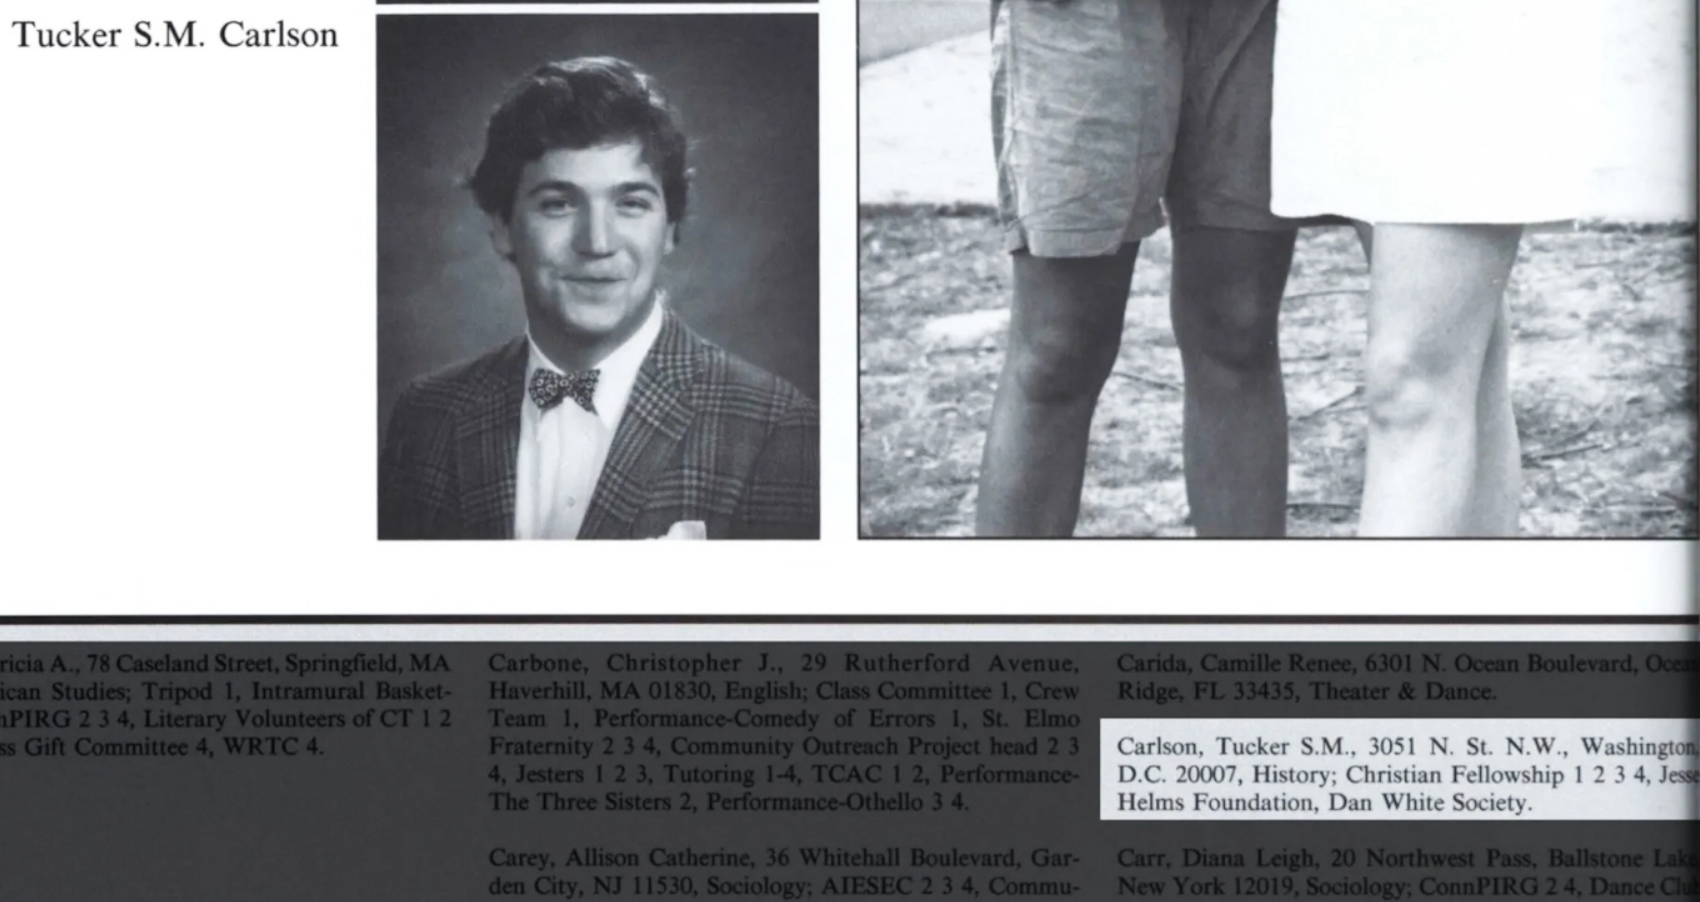 Un Carlson con pajarita en su anuario universitario de 1991, miembro de la Fundación Jesse Helms y de la sociedad Dan White.